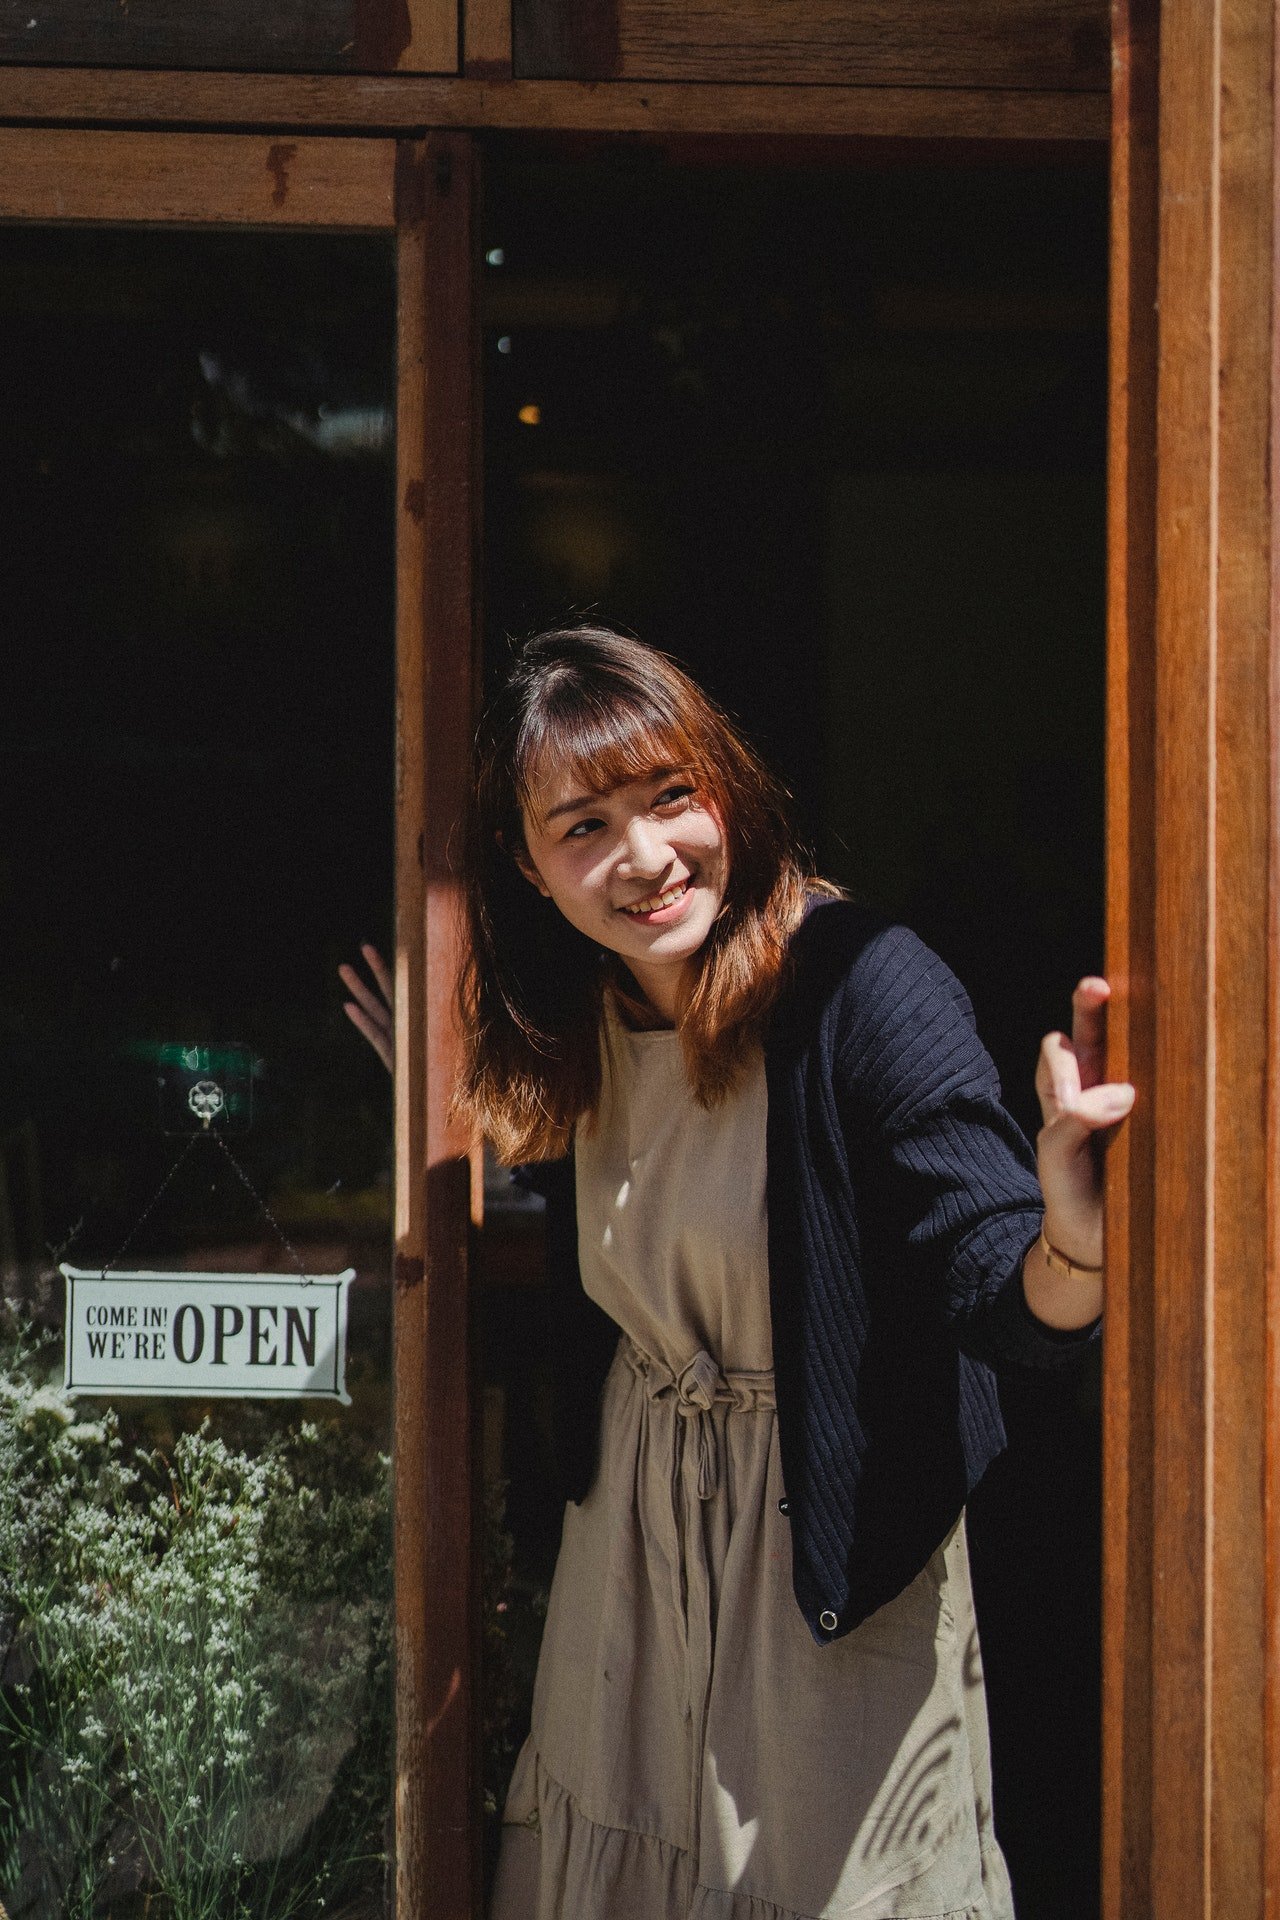 Una mujer sonriente asomada en la puerta de un local. | Foto: Pexels